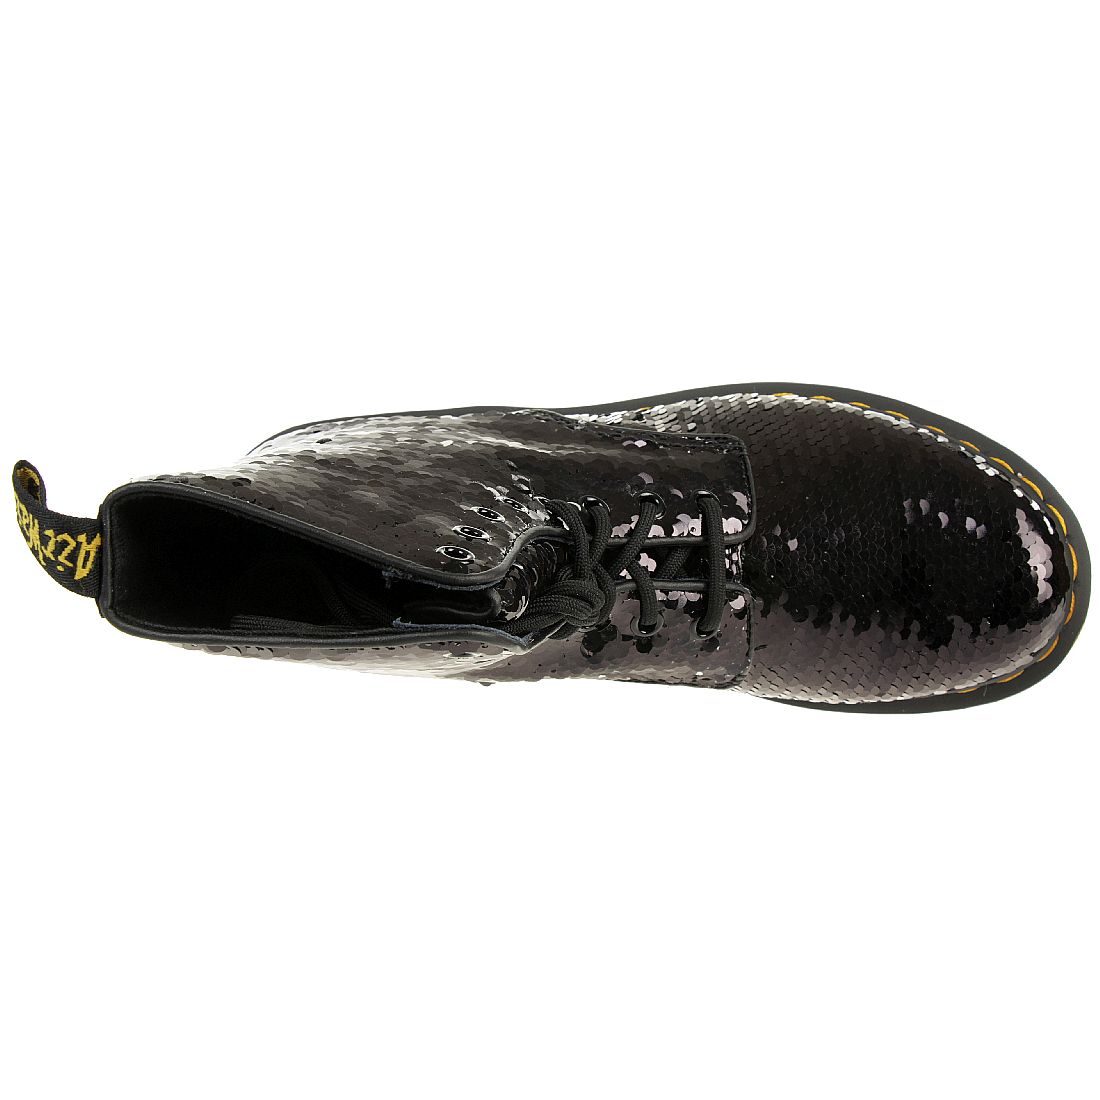 Dr. Martens 1460 Pascal Sequin Boots Damen Stiefel schwarz silber Pailletten 